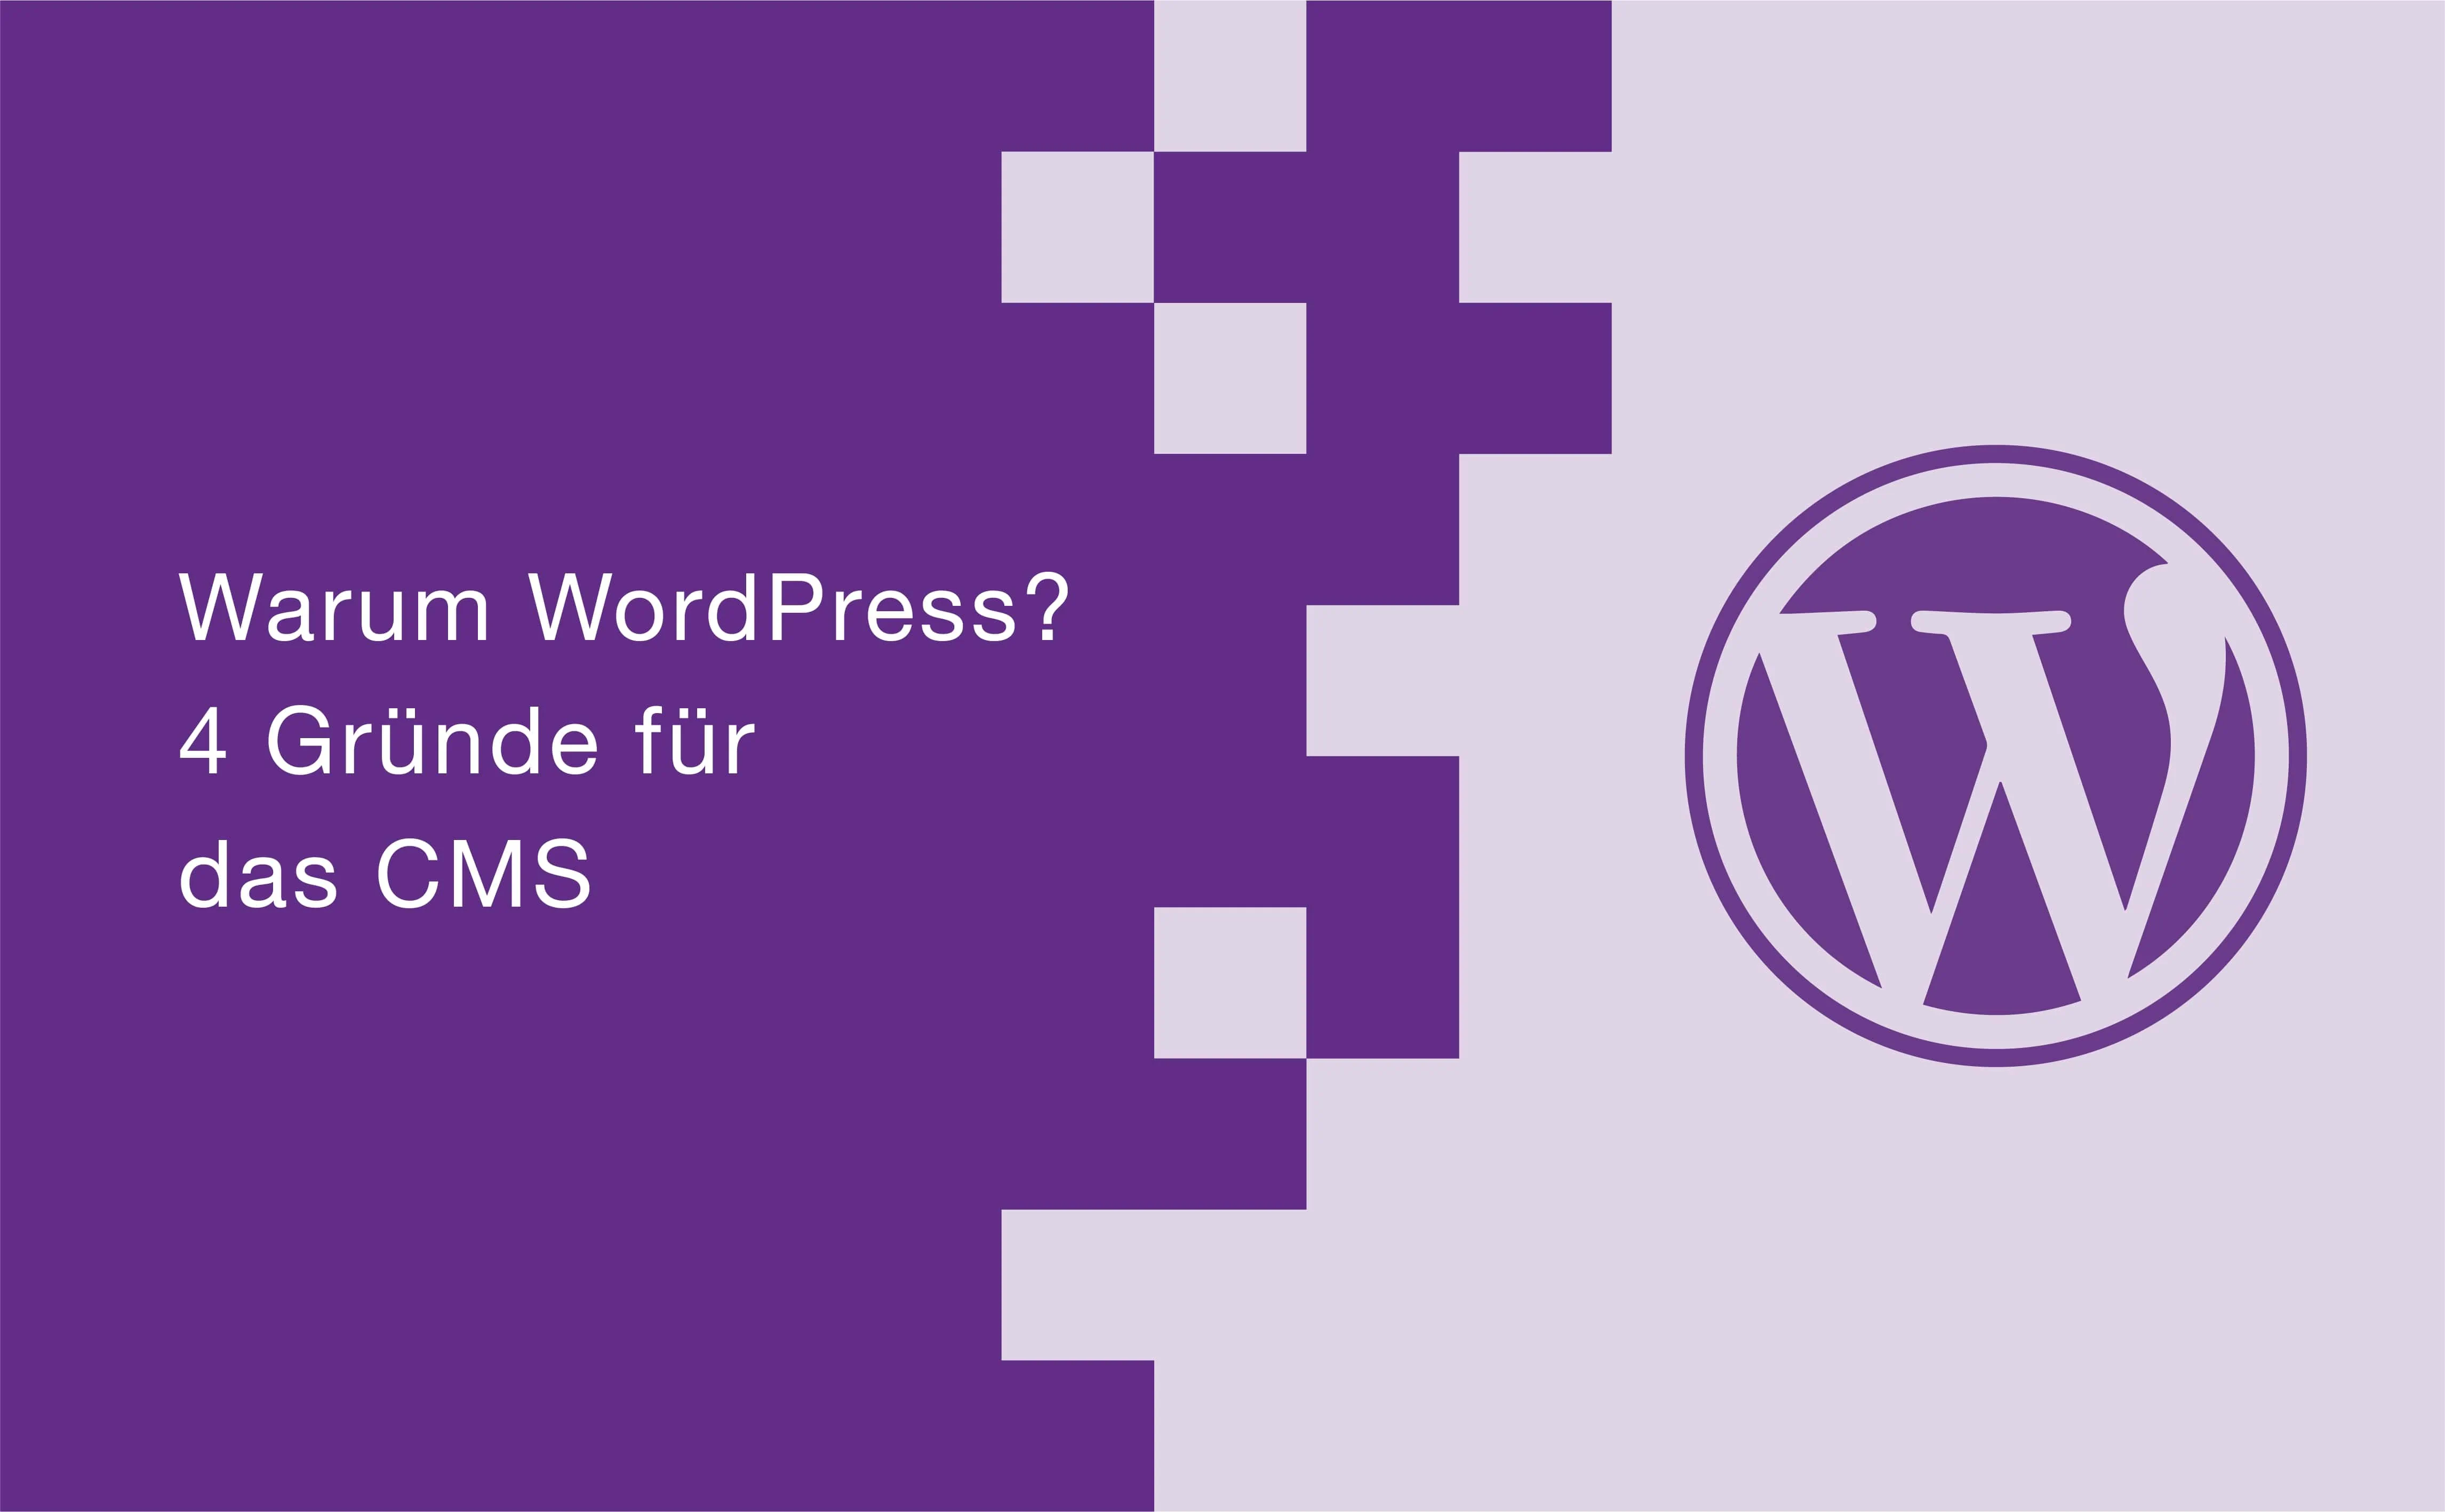 Warum WordPress? 4 Gründe für das CMS